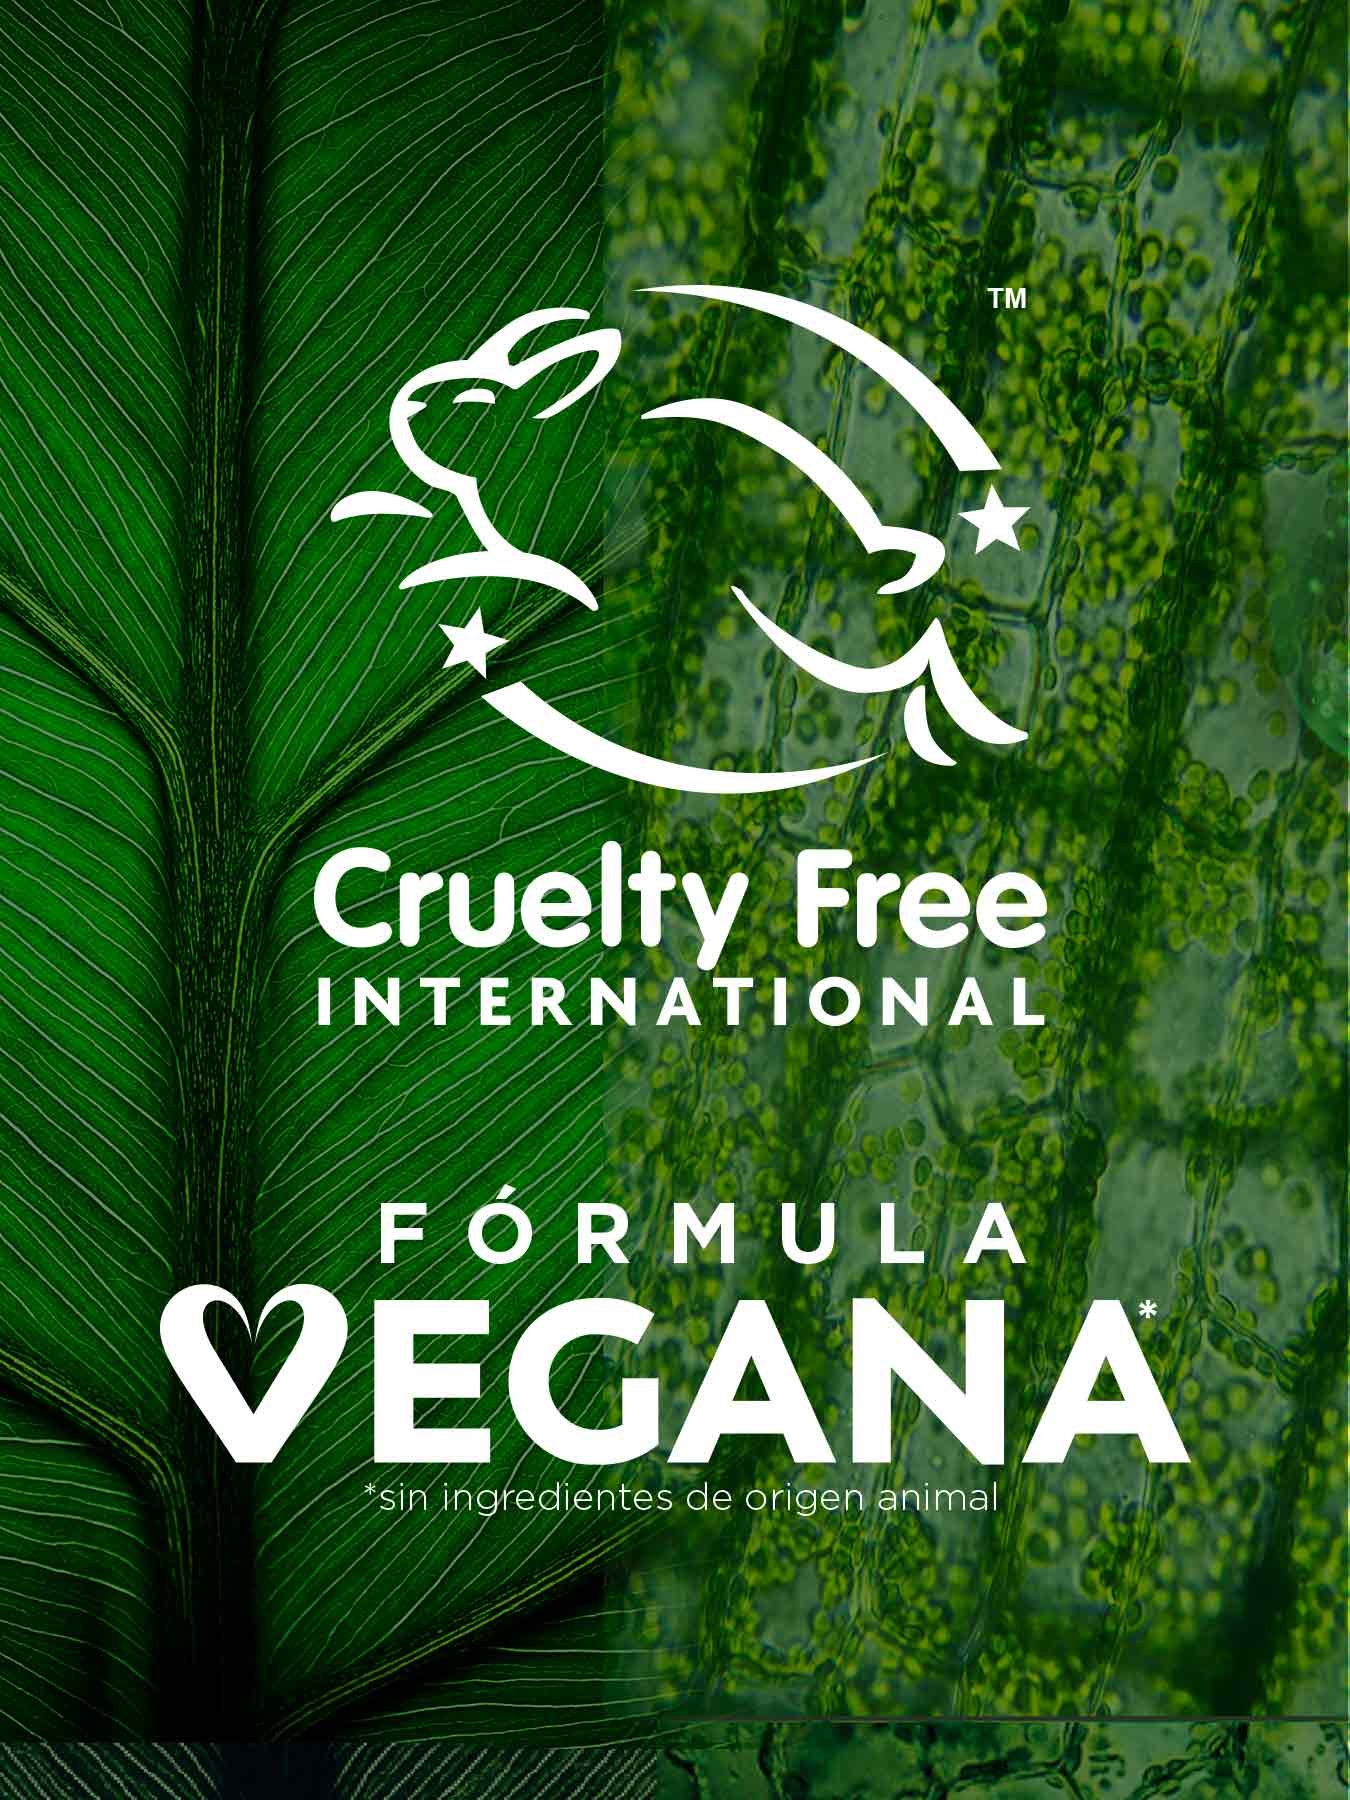 Sérum noche express Aclara, credenciales verdes, cruelty free y formula vegana.